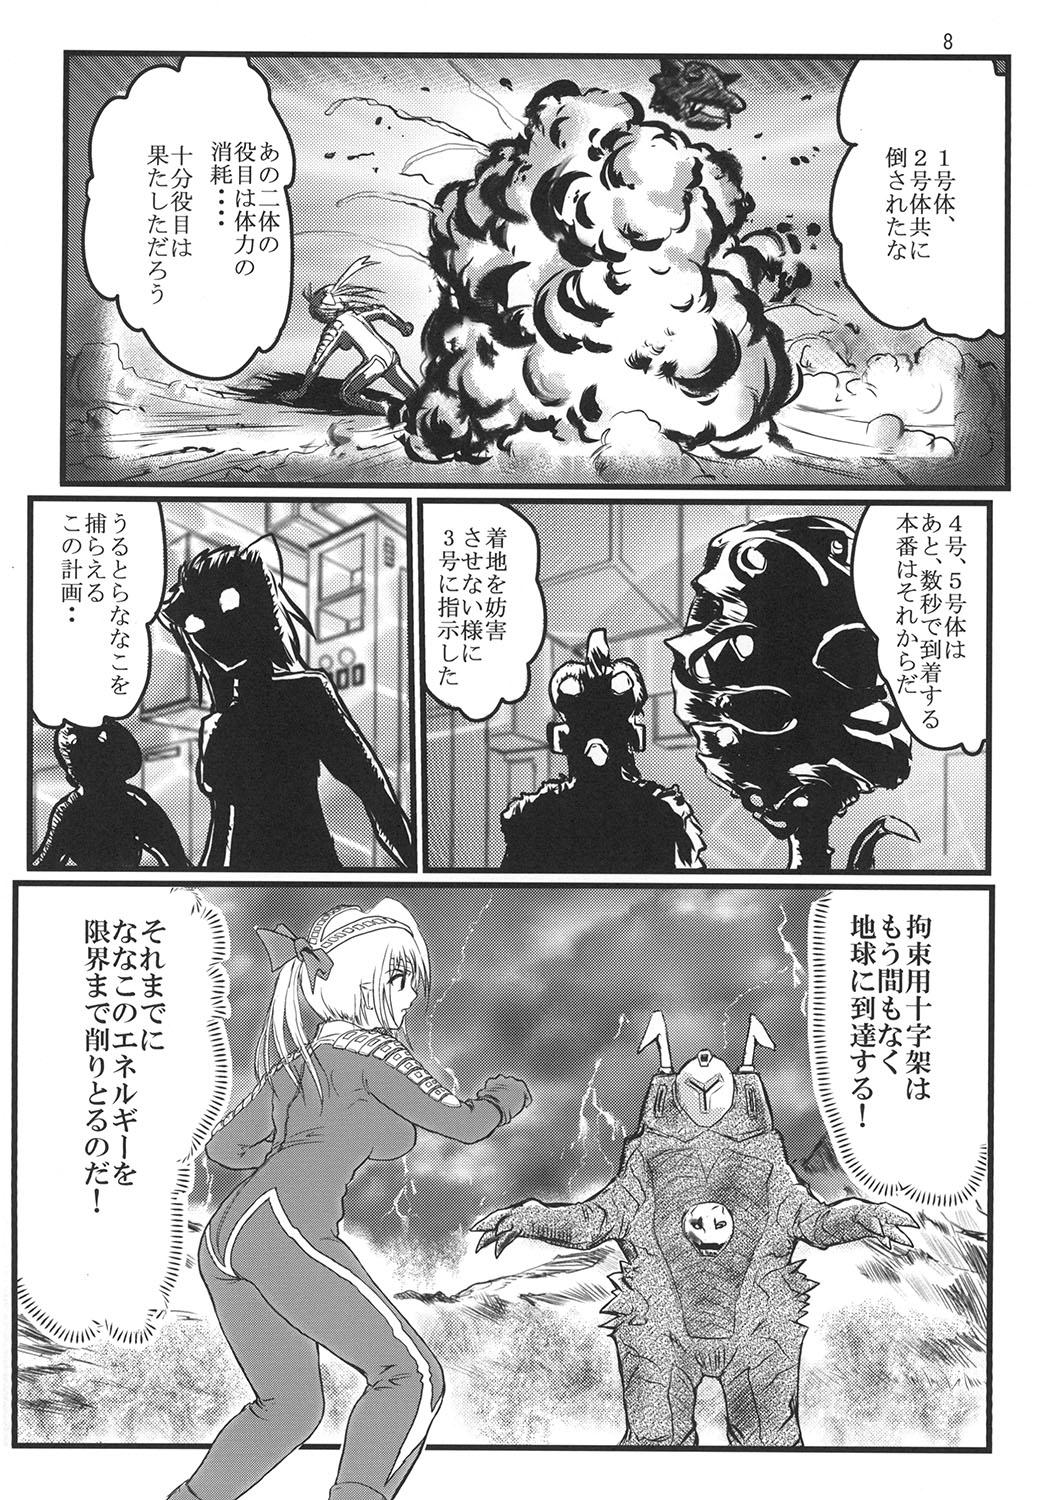 Cock Sucking Ultra Nanako Zettaizetsumei! - Ultraman Room - Page 8